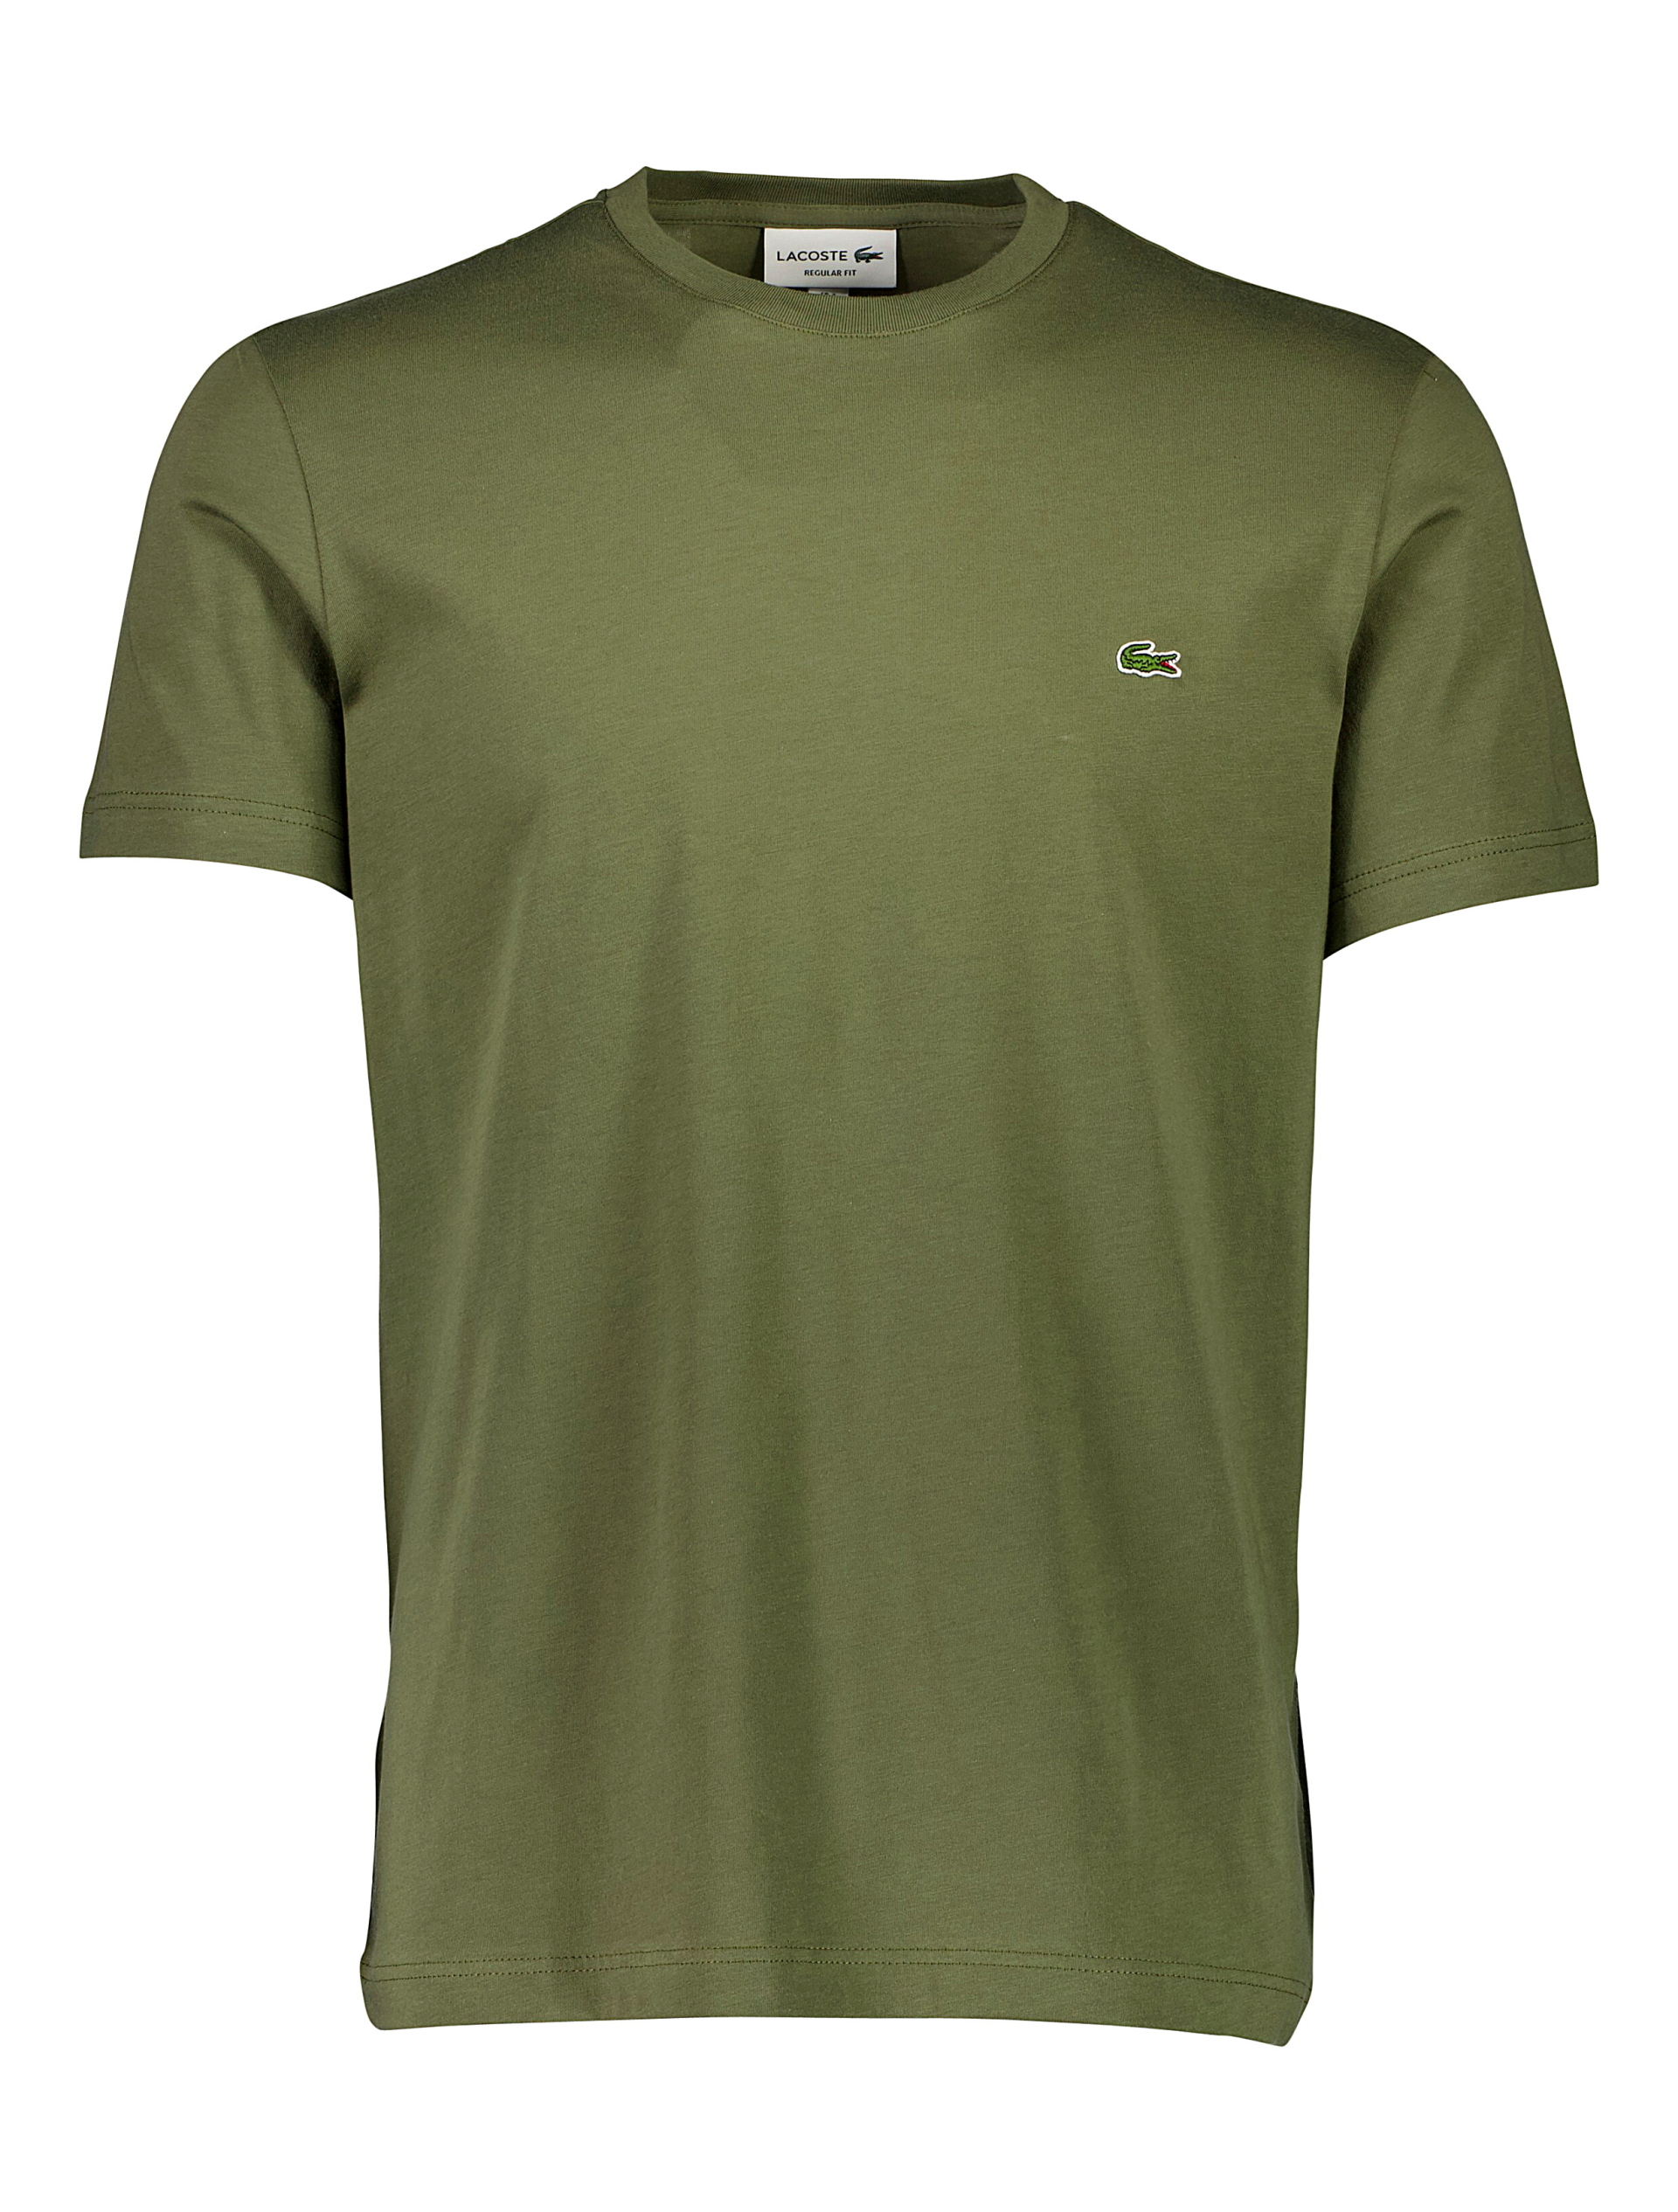 Lacoste T-shirt grøn / 316 tank